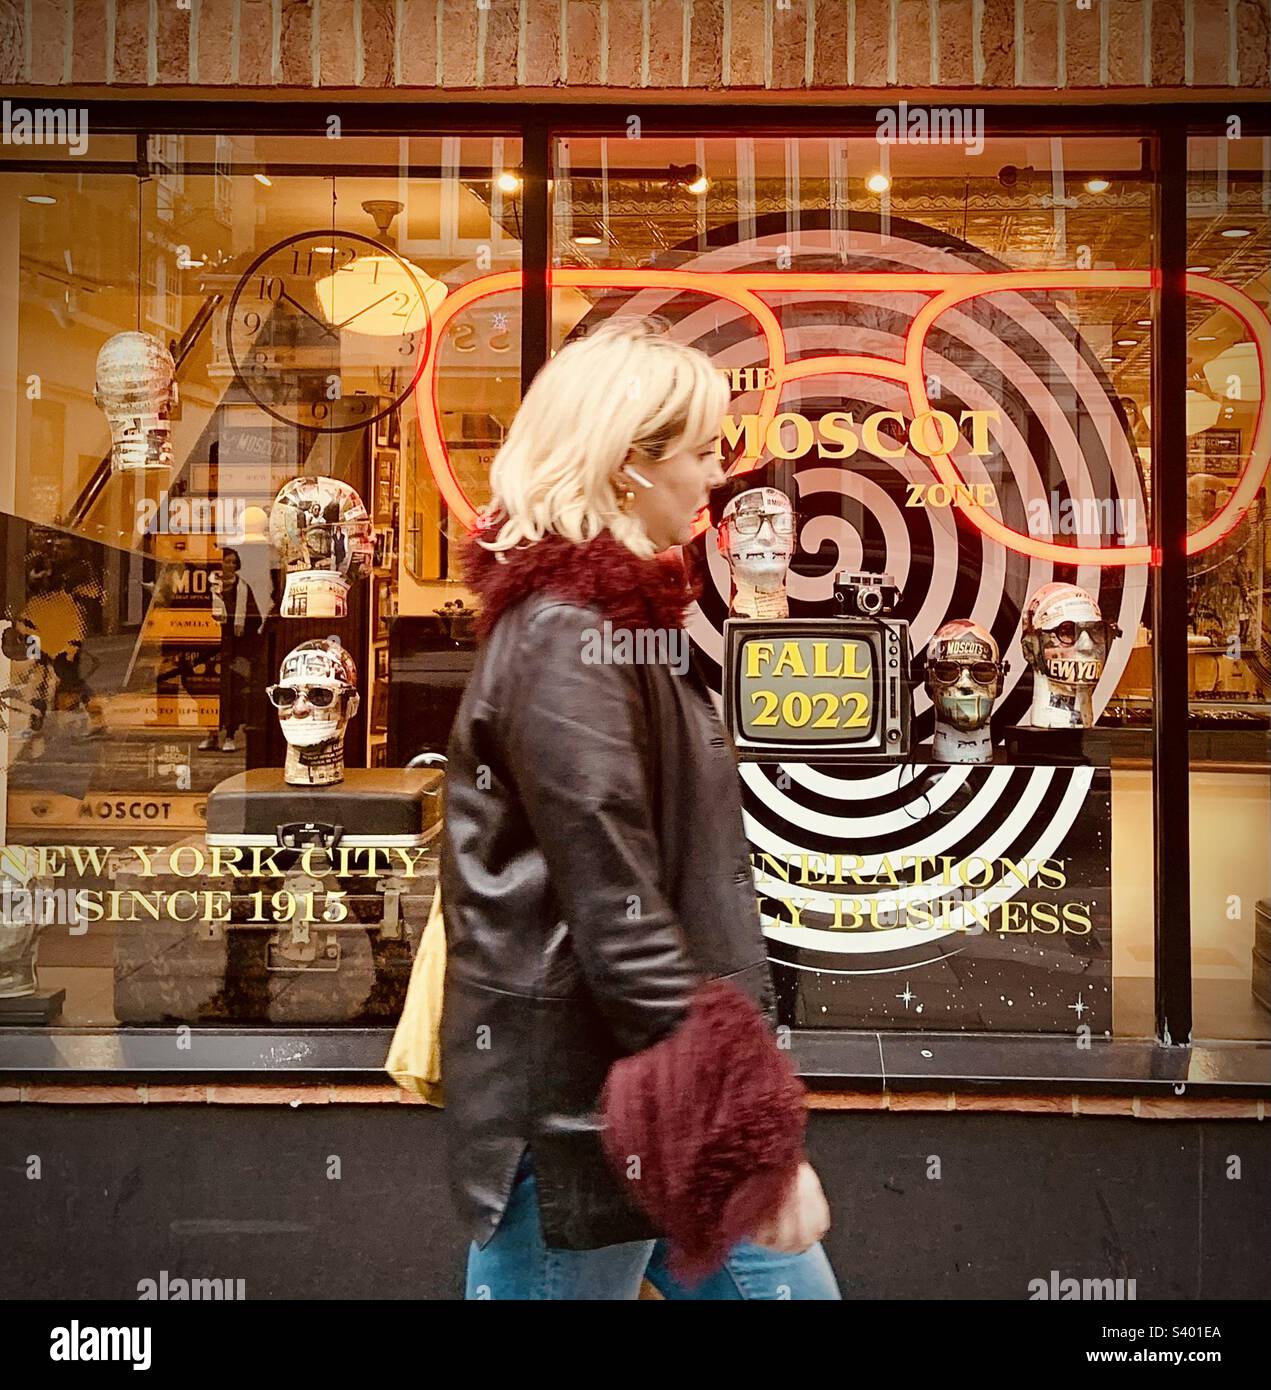 Donna con airpod che cammina davanti a un negozio di occhiali ottici alla moda con teste modello nella finestra, una spirale, e diversi occhiali e sfumature. Autunno/autunno 2022. Moscot a Londra Foto Stock